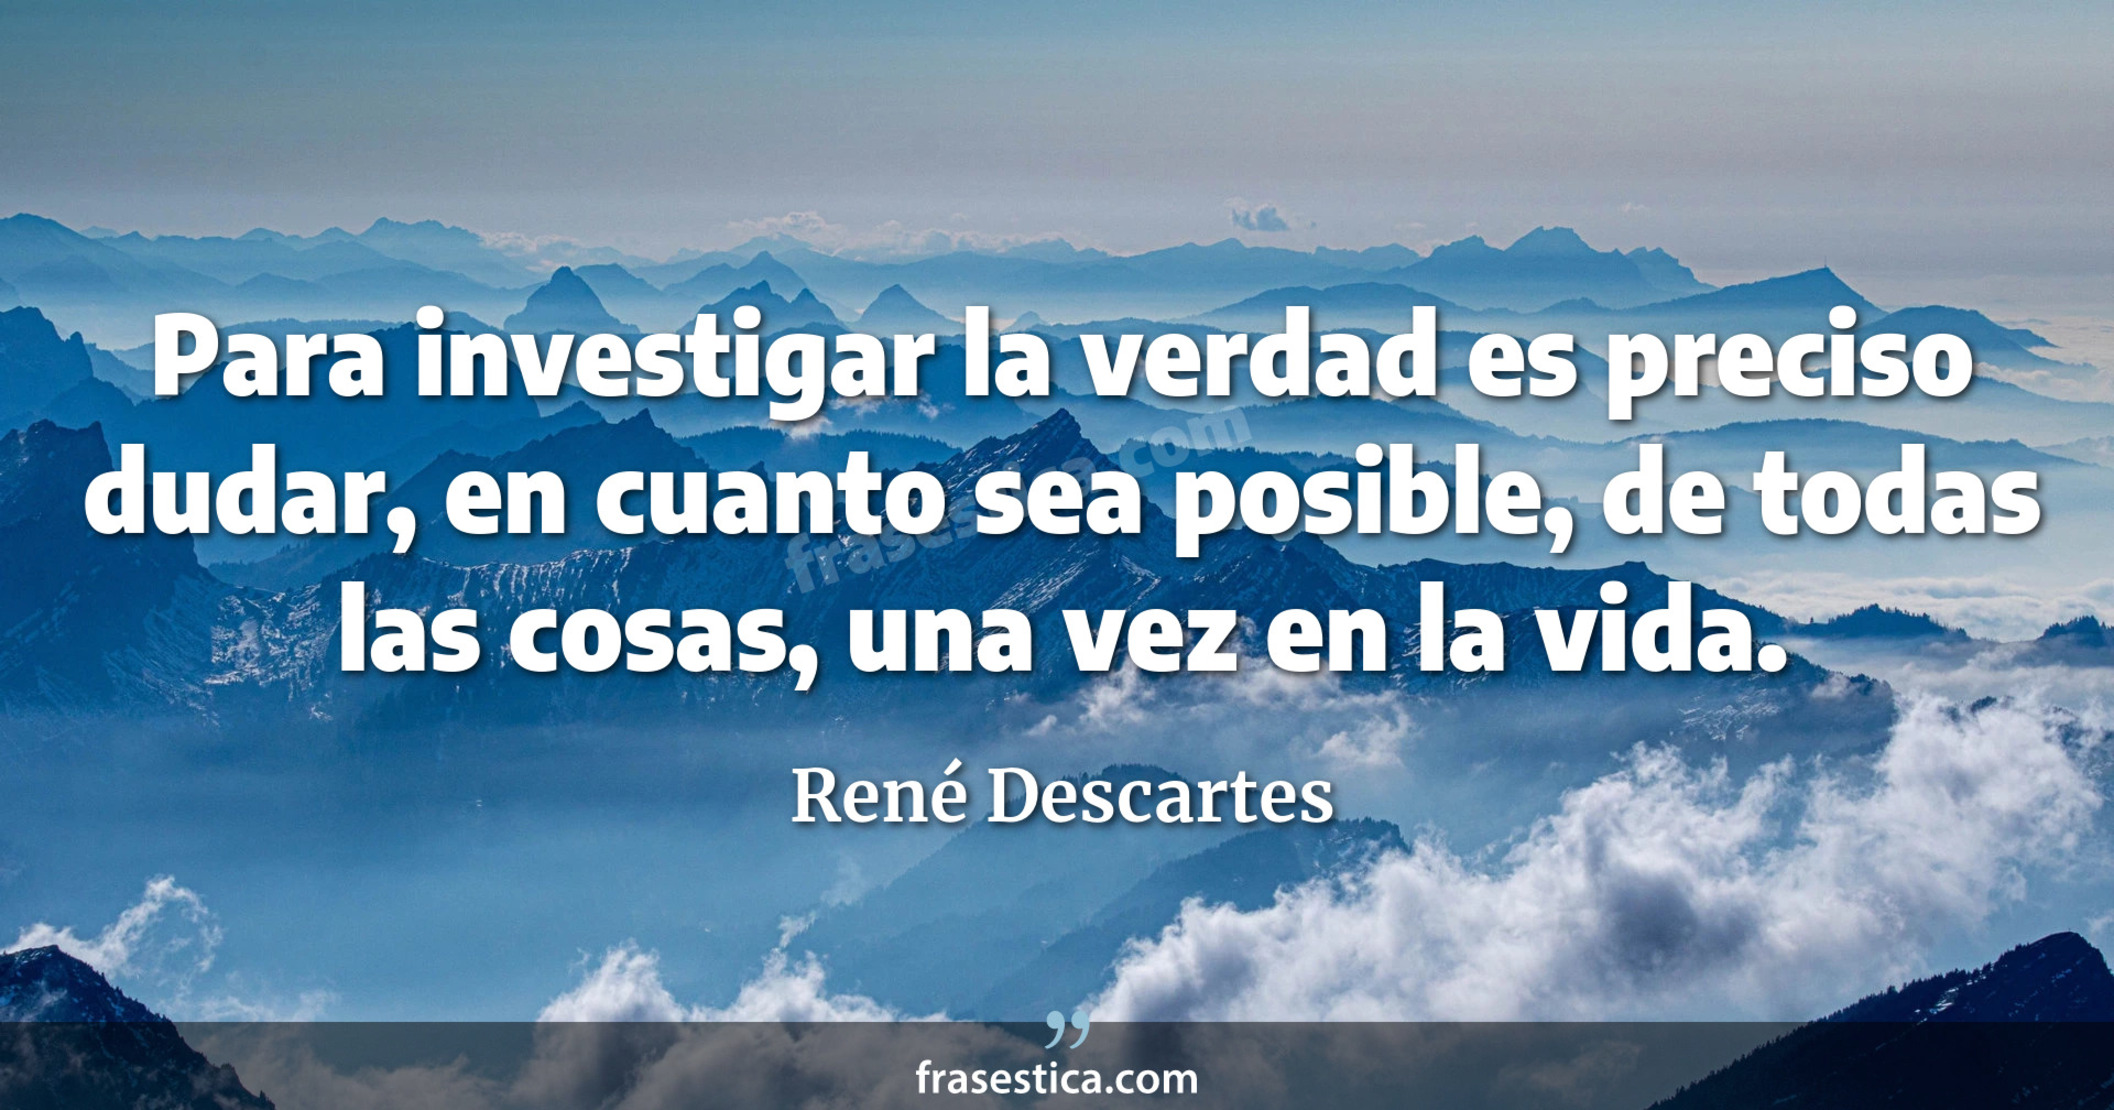 Para investigar la verdad es preciso dudar, en cuanto sea posible, de todas las cosas, una vez en la vida. - René Descartes